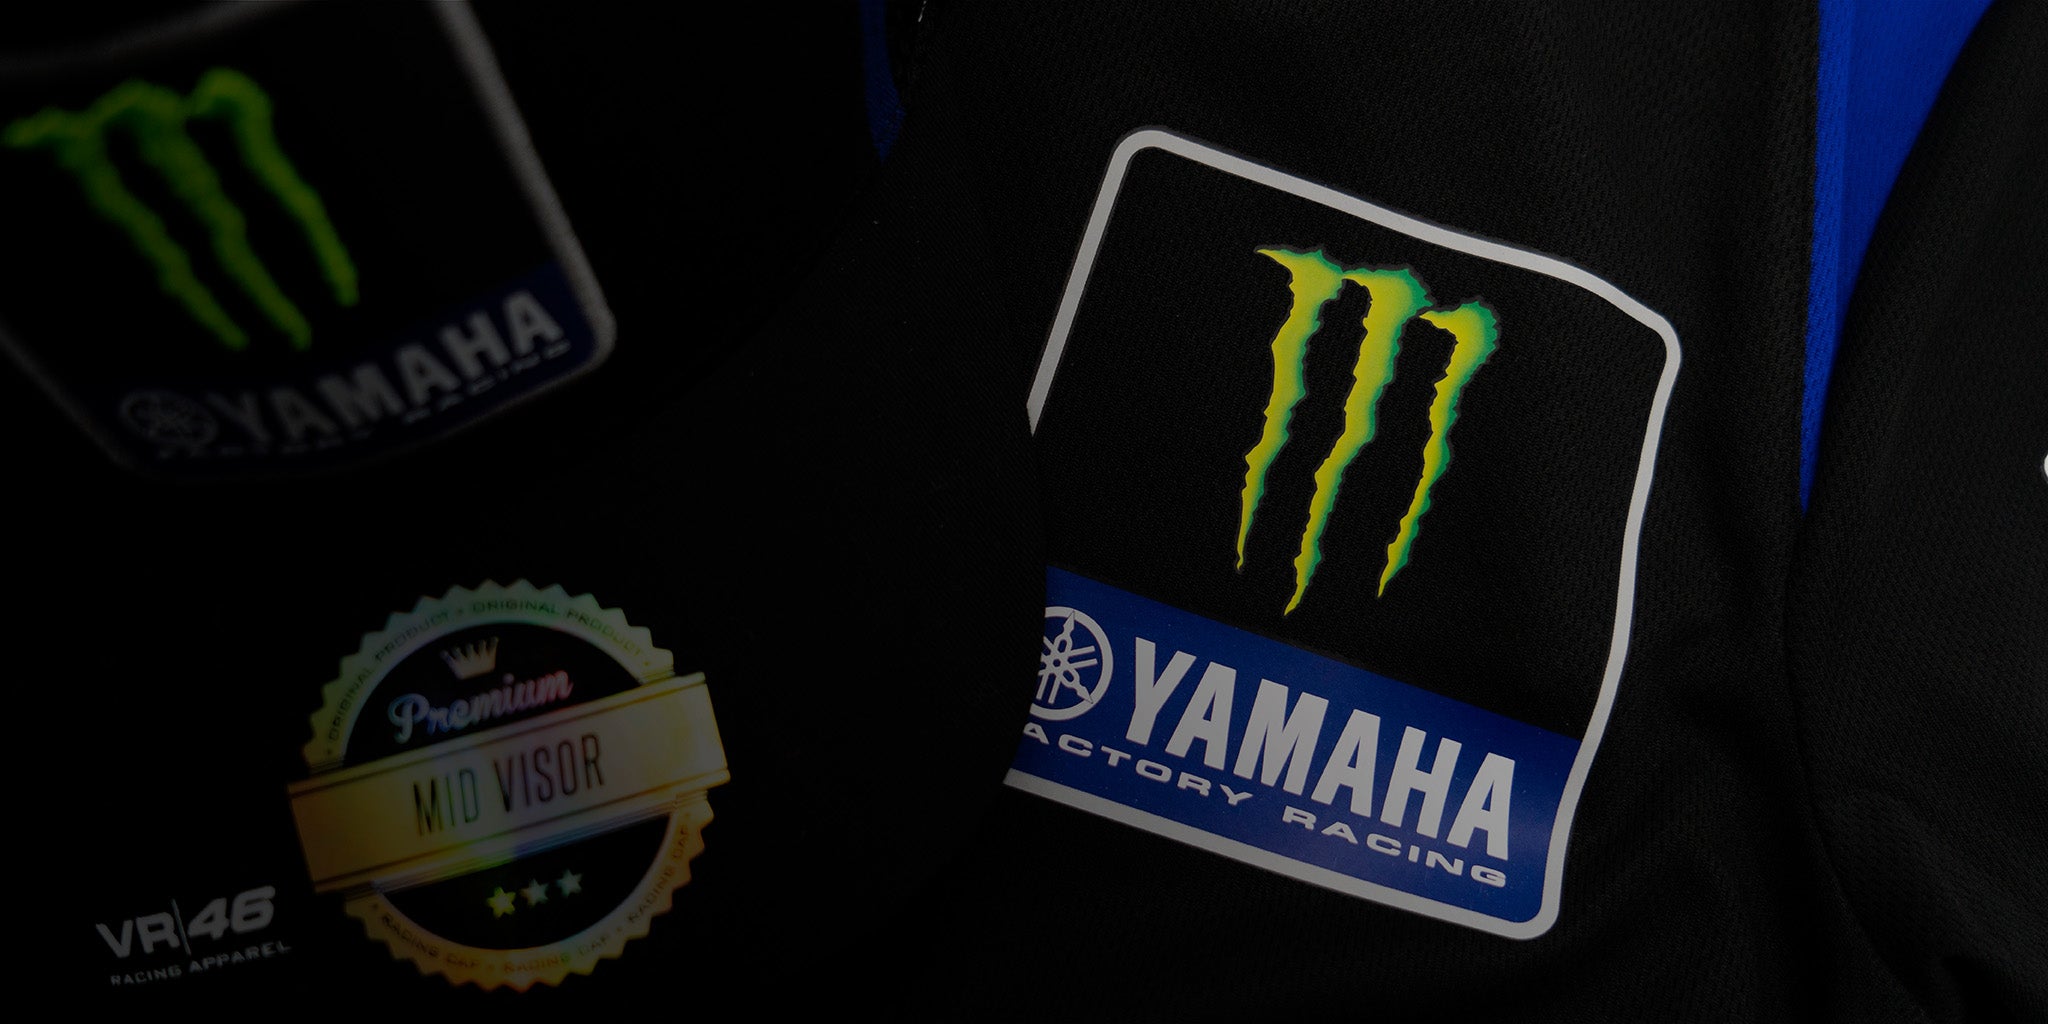 T-shirt homme Fabio Quartararo Yamaha Factory Racing - Logos avec